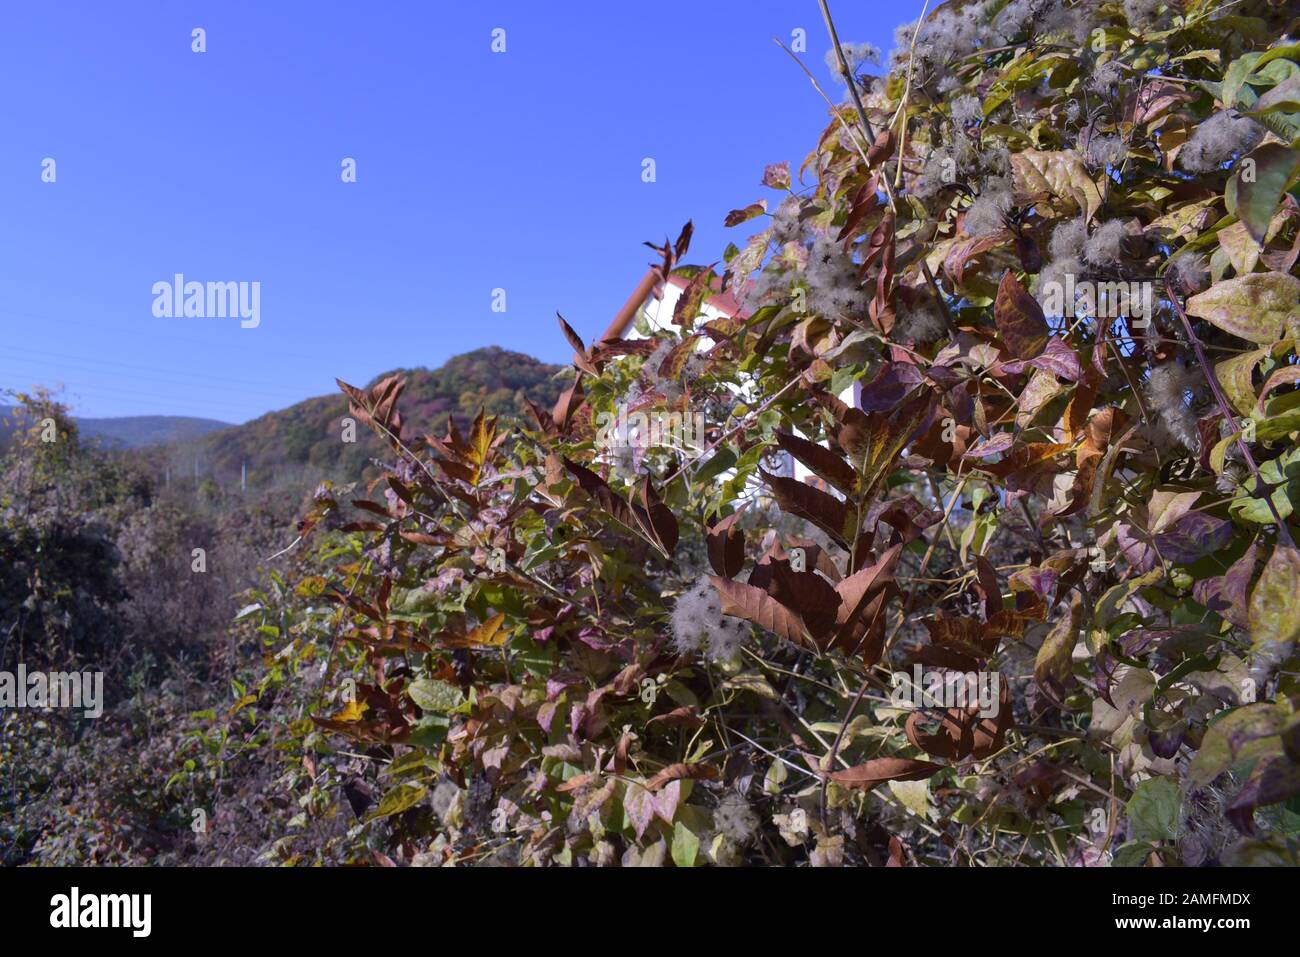 Vibrations d'automne données par certains buissons, le ciel bleu, et le fond rempli d'une forêt Banque D'Images